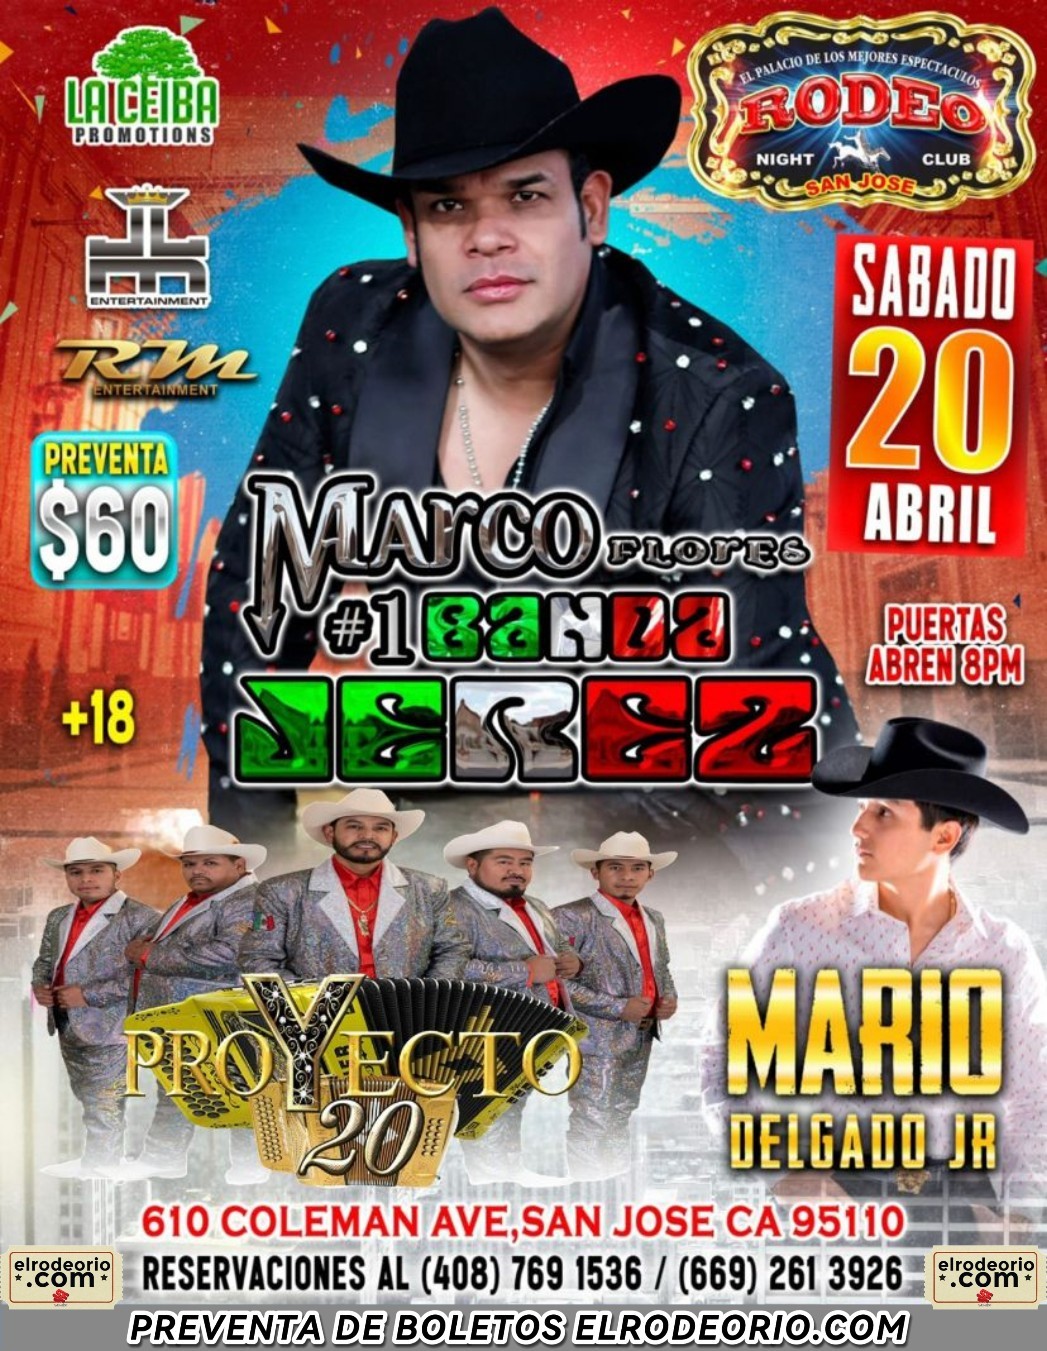 Marco Flores y La  #1 Banda Jerez,Kumbre con K y Mario Delgado Jr.  on Apr 20, 20:00@Club Rodeo - Buy tickets and Get information on elrodeorio.com sanjoseentertainment